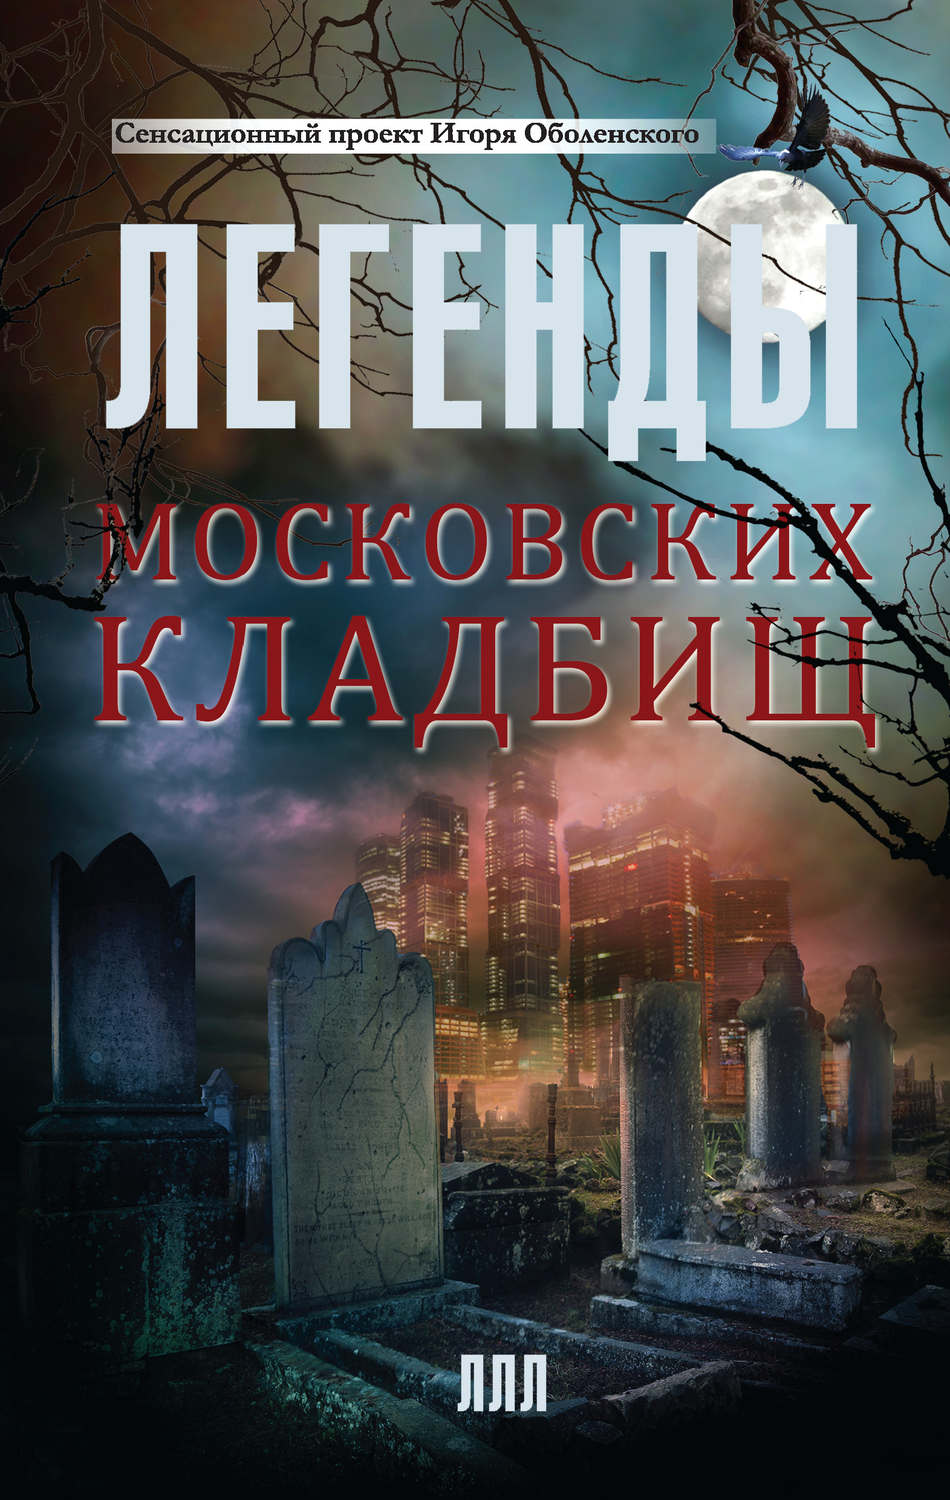 Оболенский легенды московских кладбищ скачать pdf